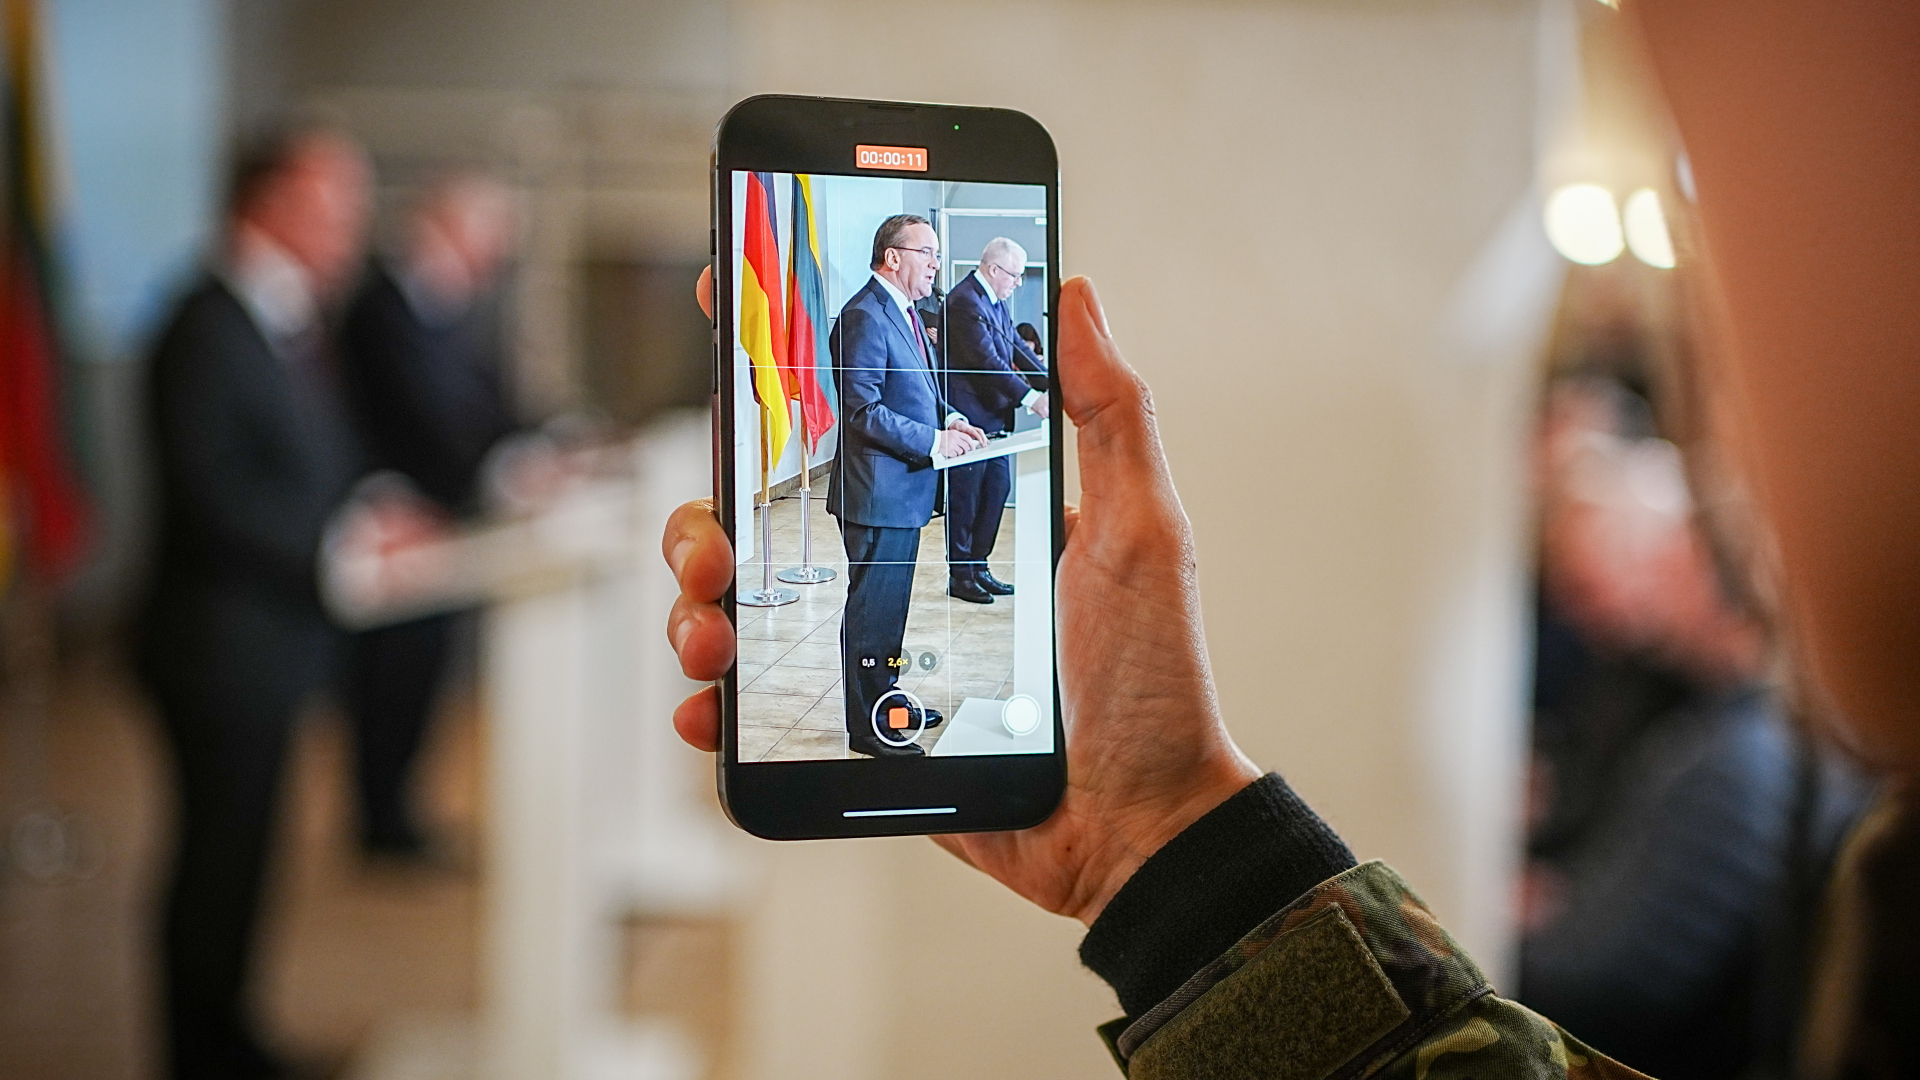 Boris Pistorius und Arvydas Anusauskas sind auf einem Smartphone während ihrer Pressekonferenz zu sehen.  | d